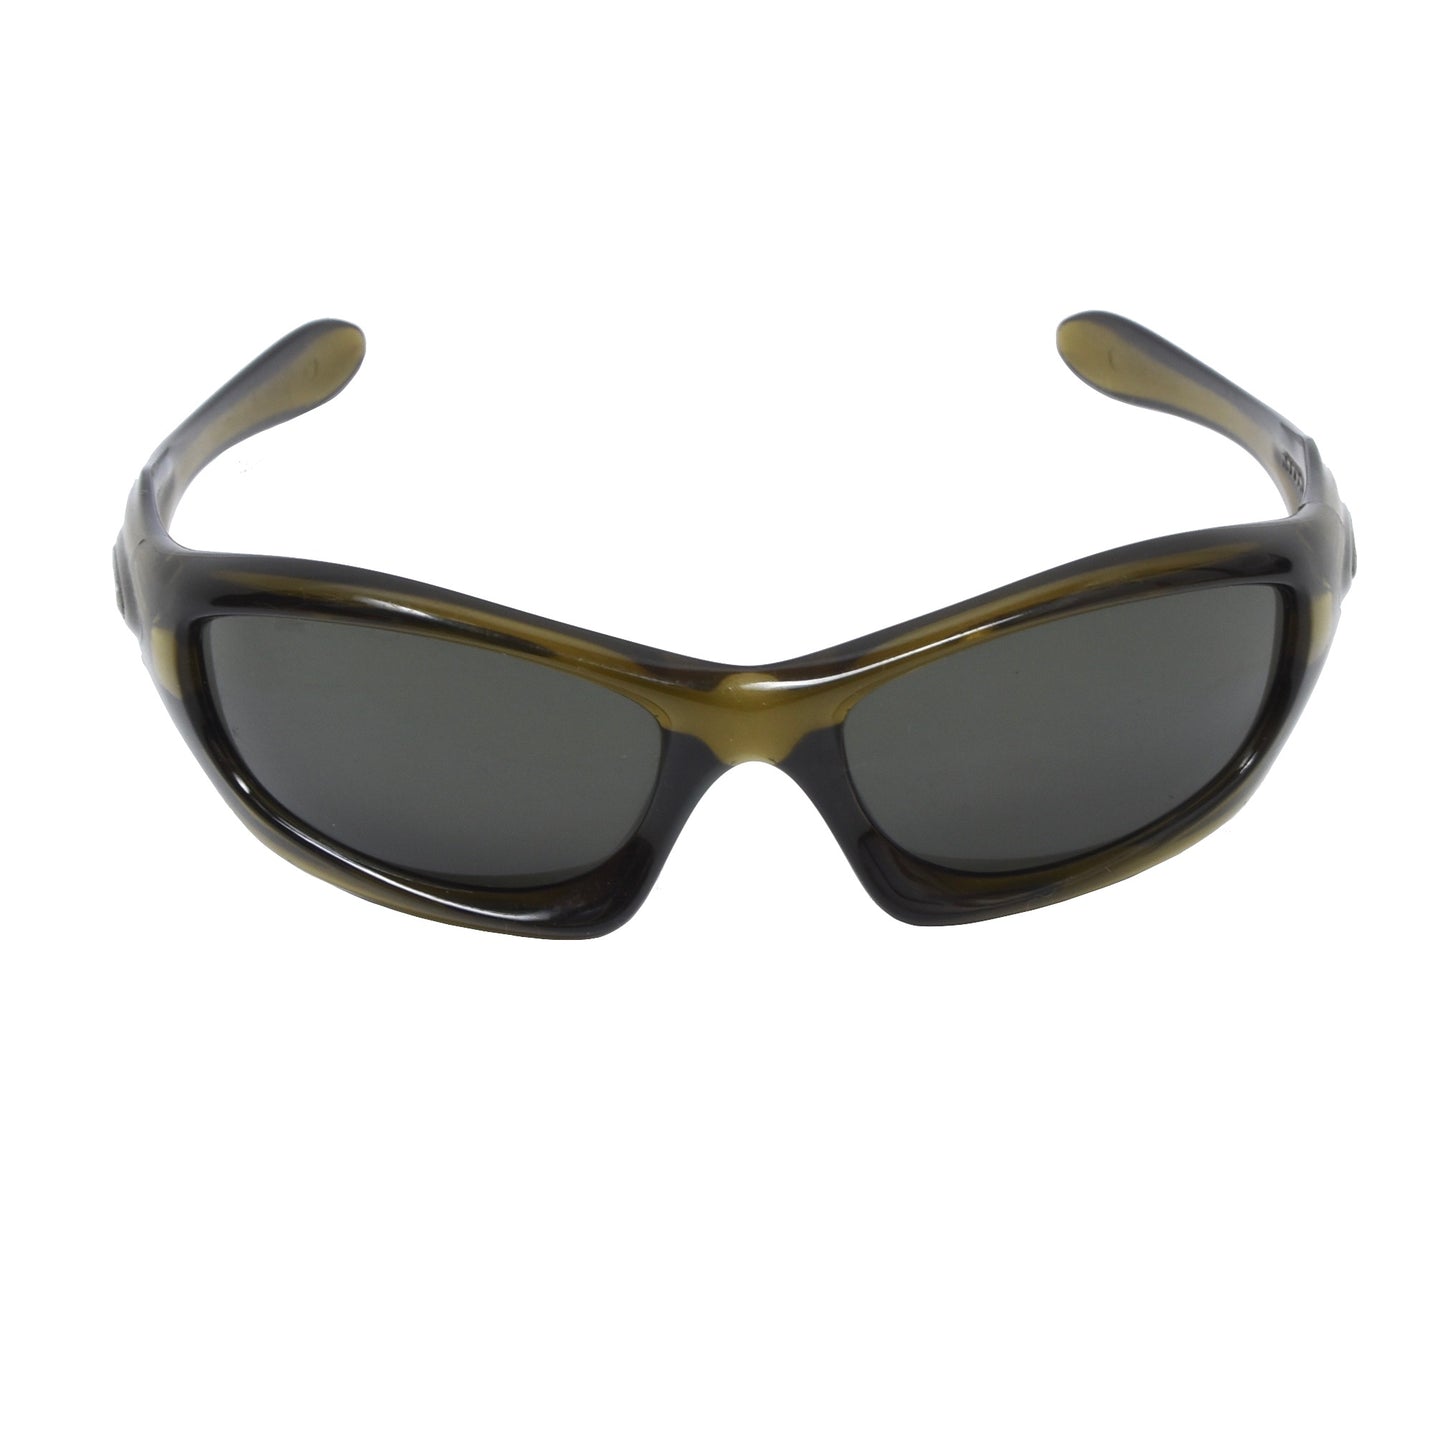 Oakley Monster Dog Sonnenbrille - Dunkles durchscheinendes Oliv